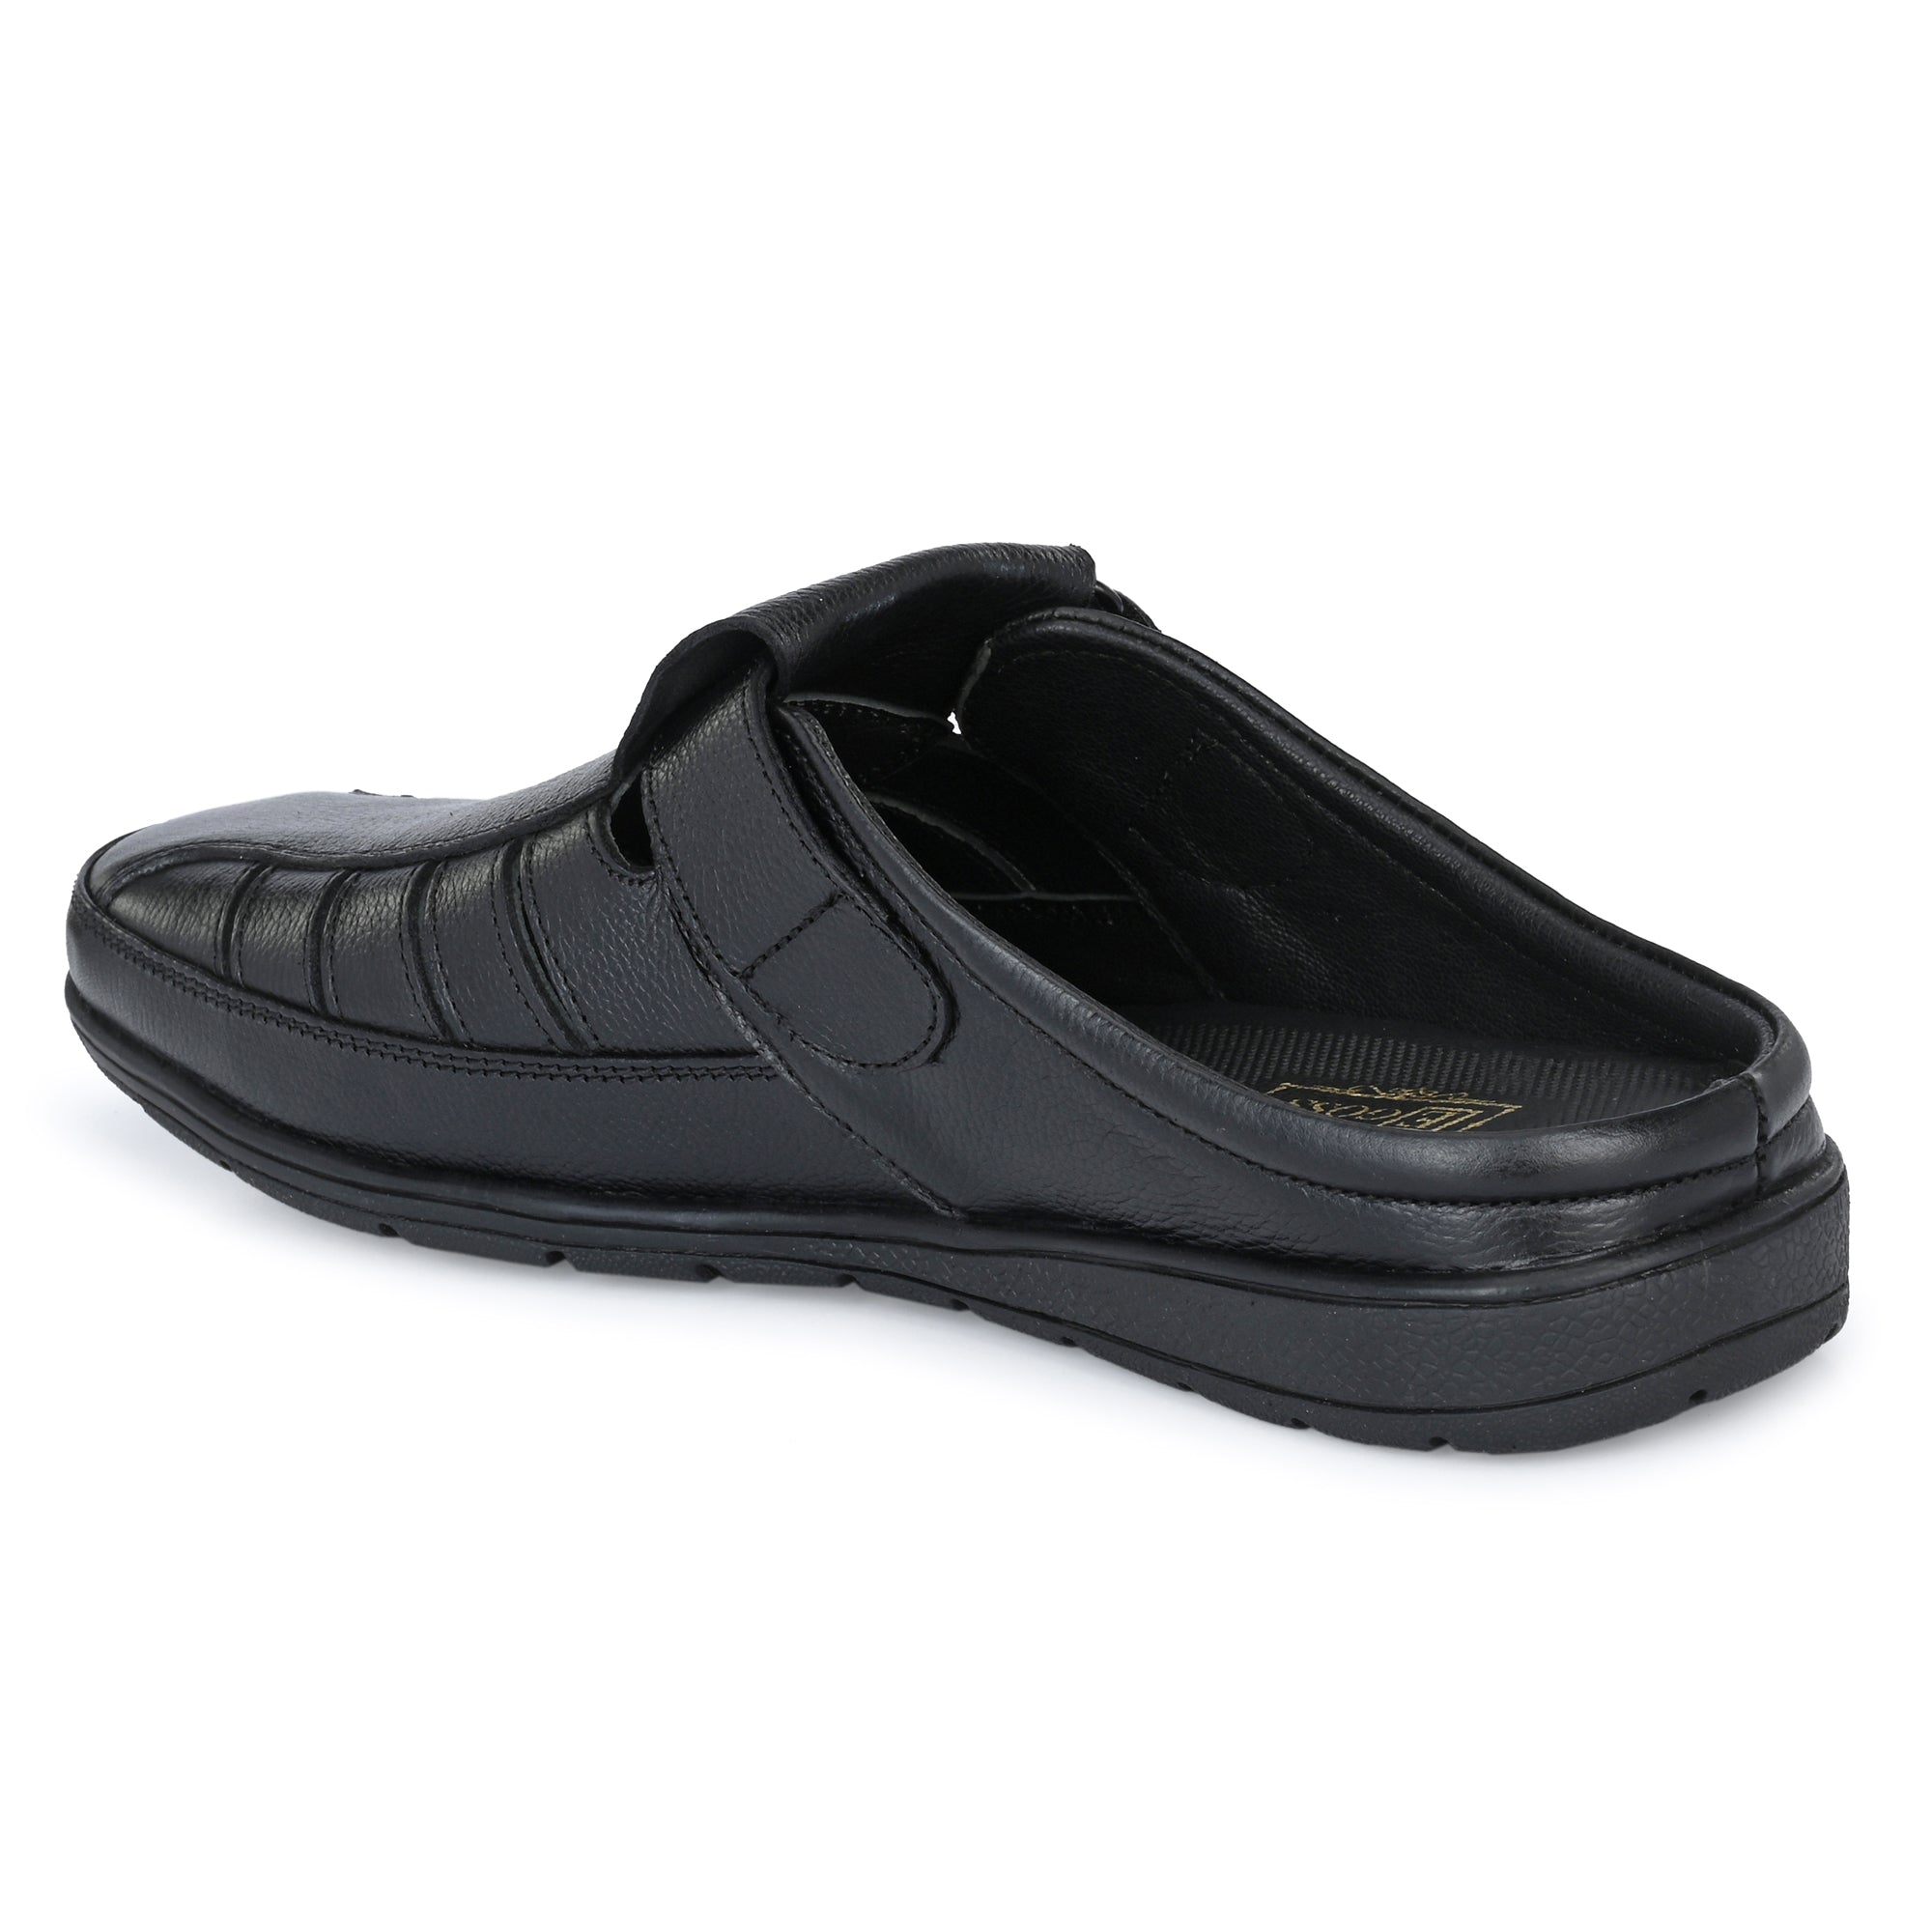 Egoss Slip-On Sandals For Men